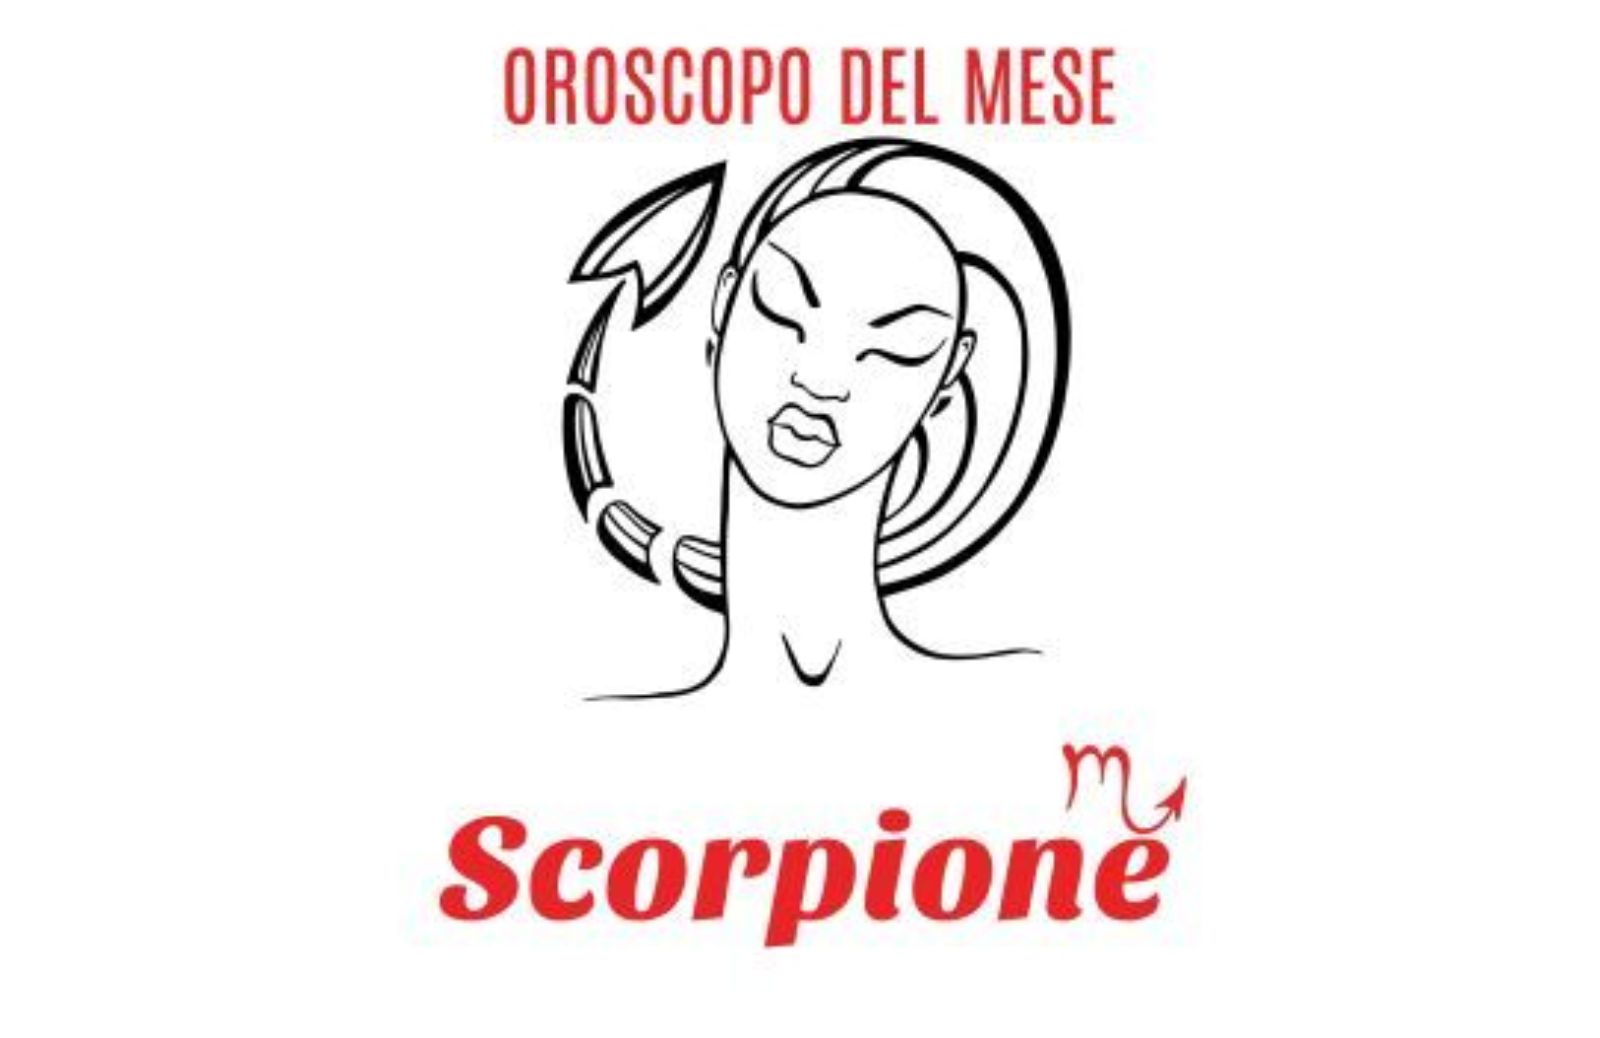 Oroscopo del mese: Scorpione - dicembre 2019